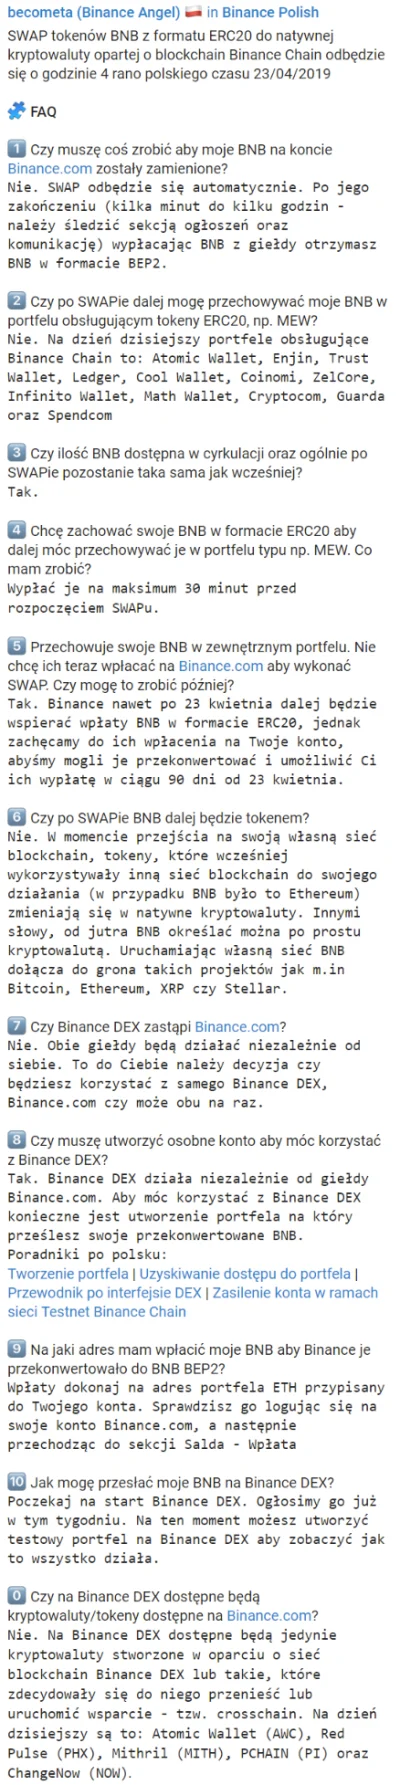 BeCometA - #FAQ po polsku dotyczące migracji #BNB z sieci #blockchain #Ethereum do si...